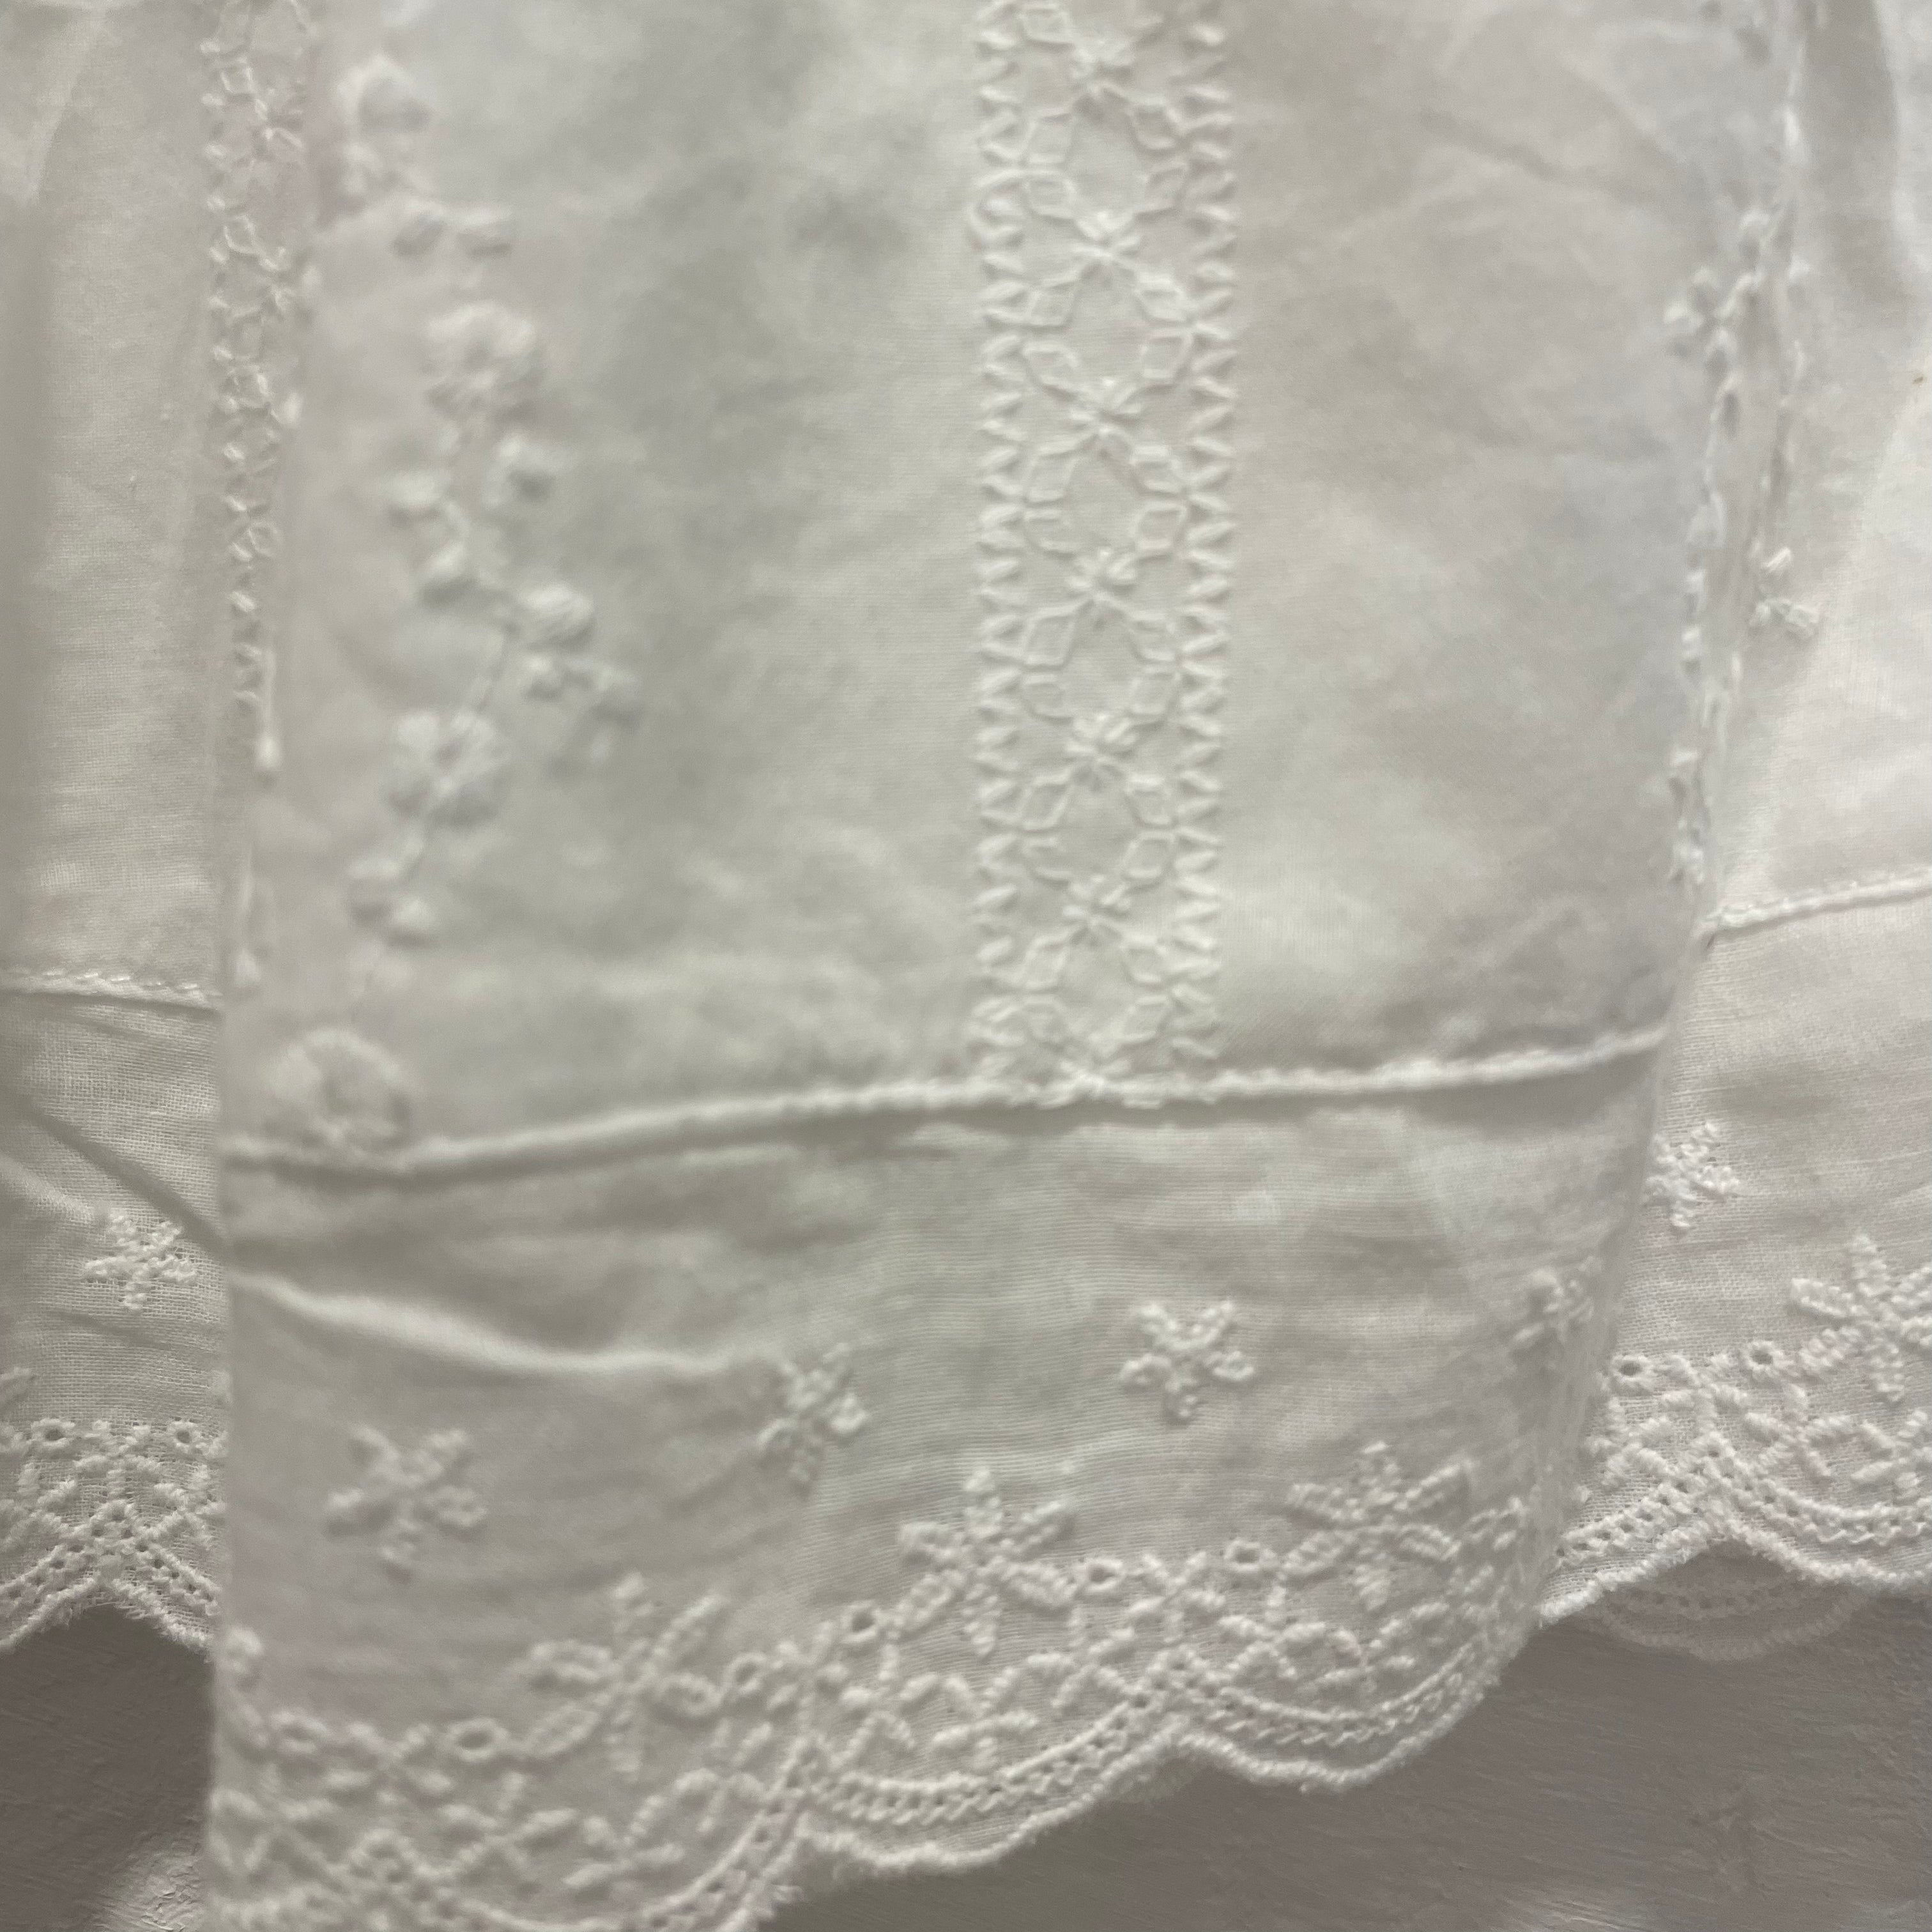 Hygge Selection - lace mini skirt - white